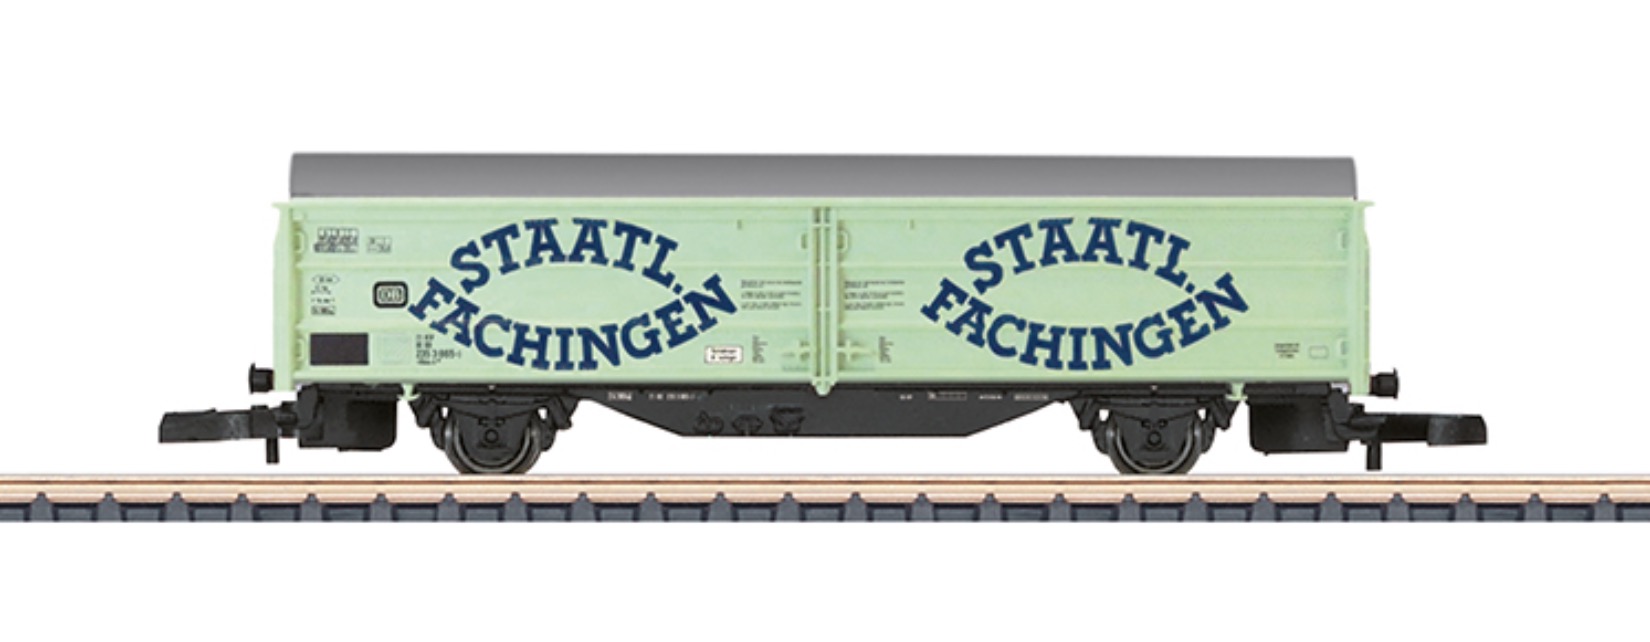 Z Scale - Märklin - 82156 - Rolling Stock, Boxcar, Sliding Wall, Hbis 299, Epoch IV - Staatl. Fachingen